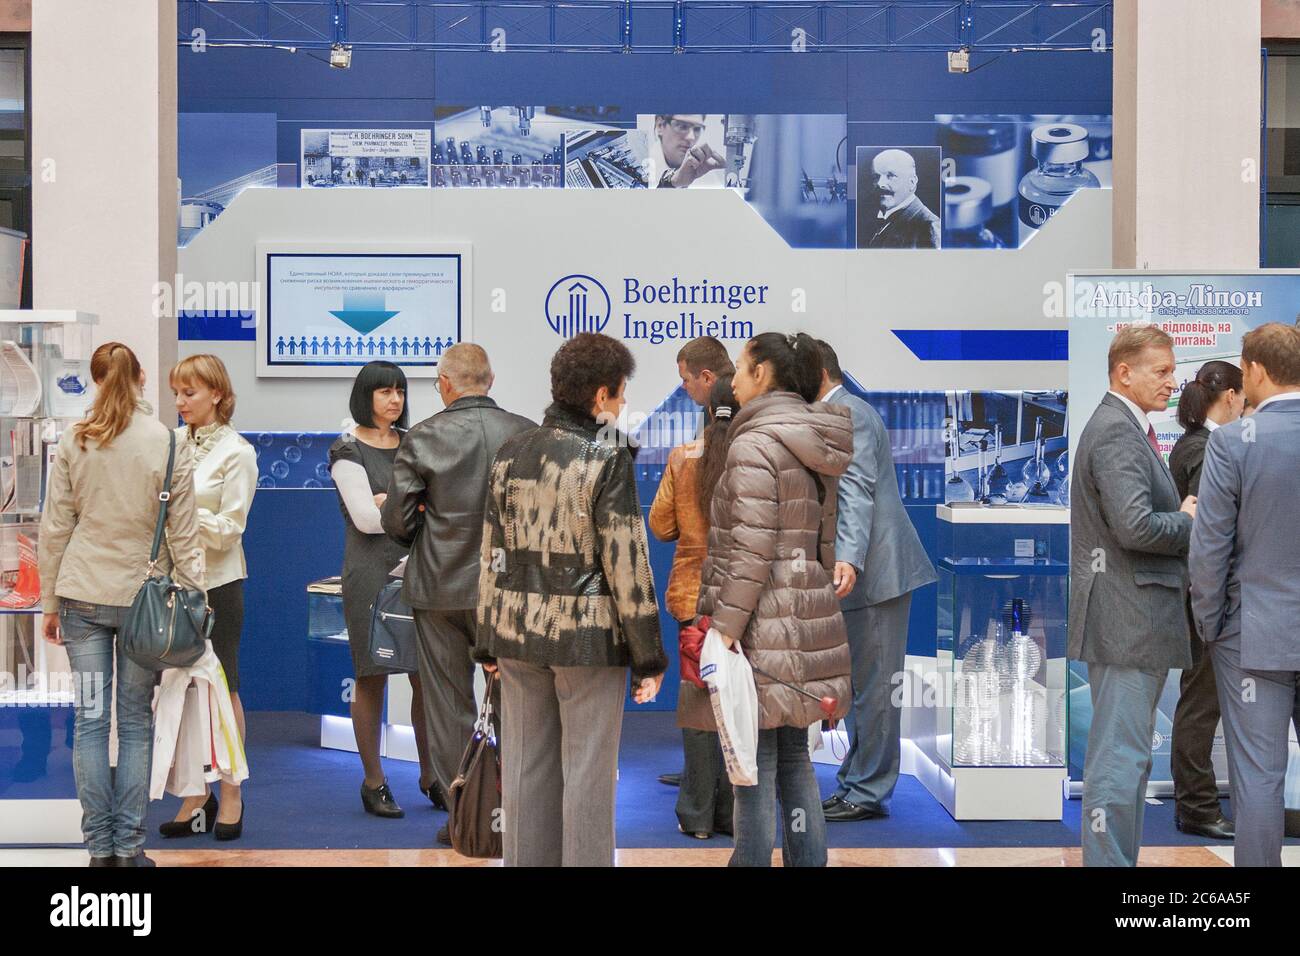 KIEV, UCRAINA - 23 SETTEMBRE 2014: La gente visita Boehringer Ingelheim cabina tedesca della società farmaceutica al XV Congresso Nazionale dei cardiologi in Foto Stock